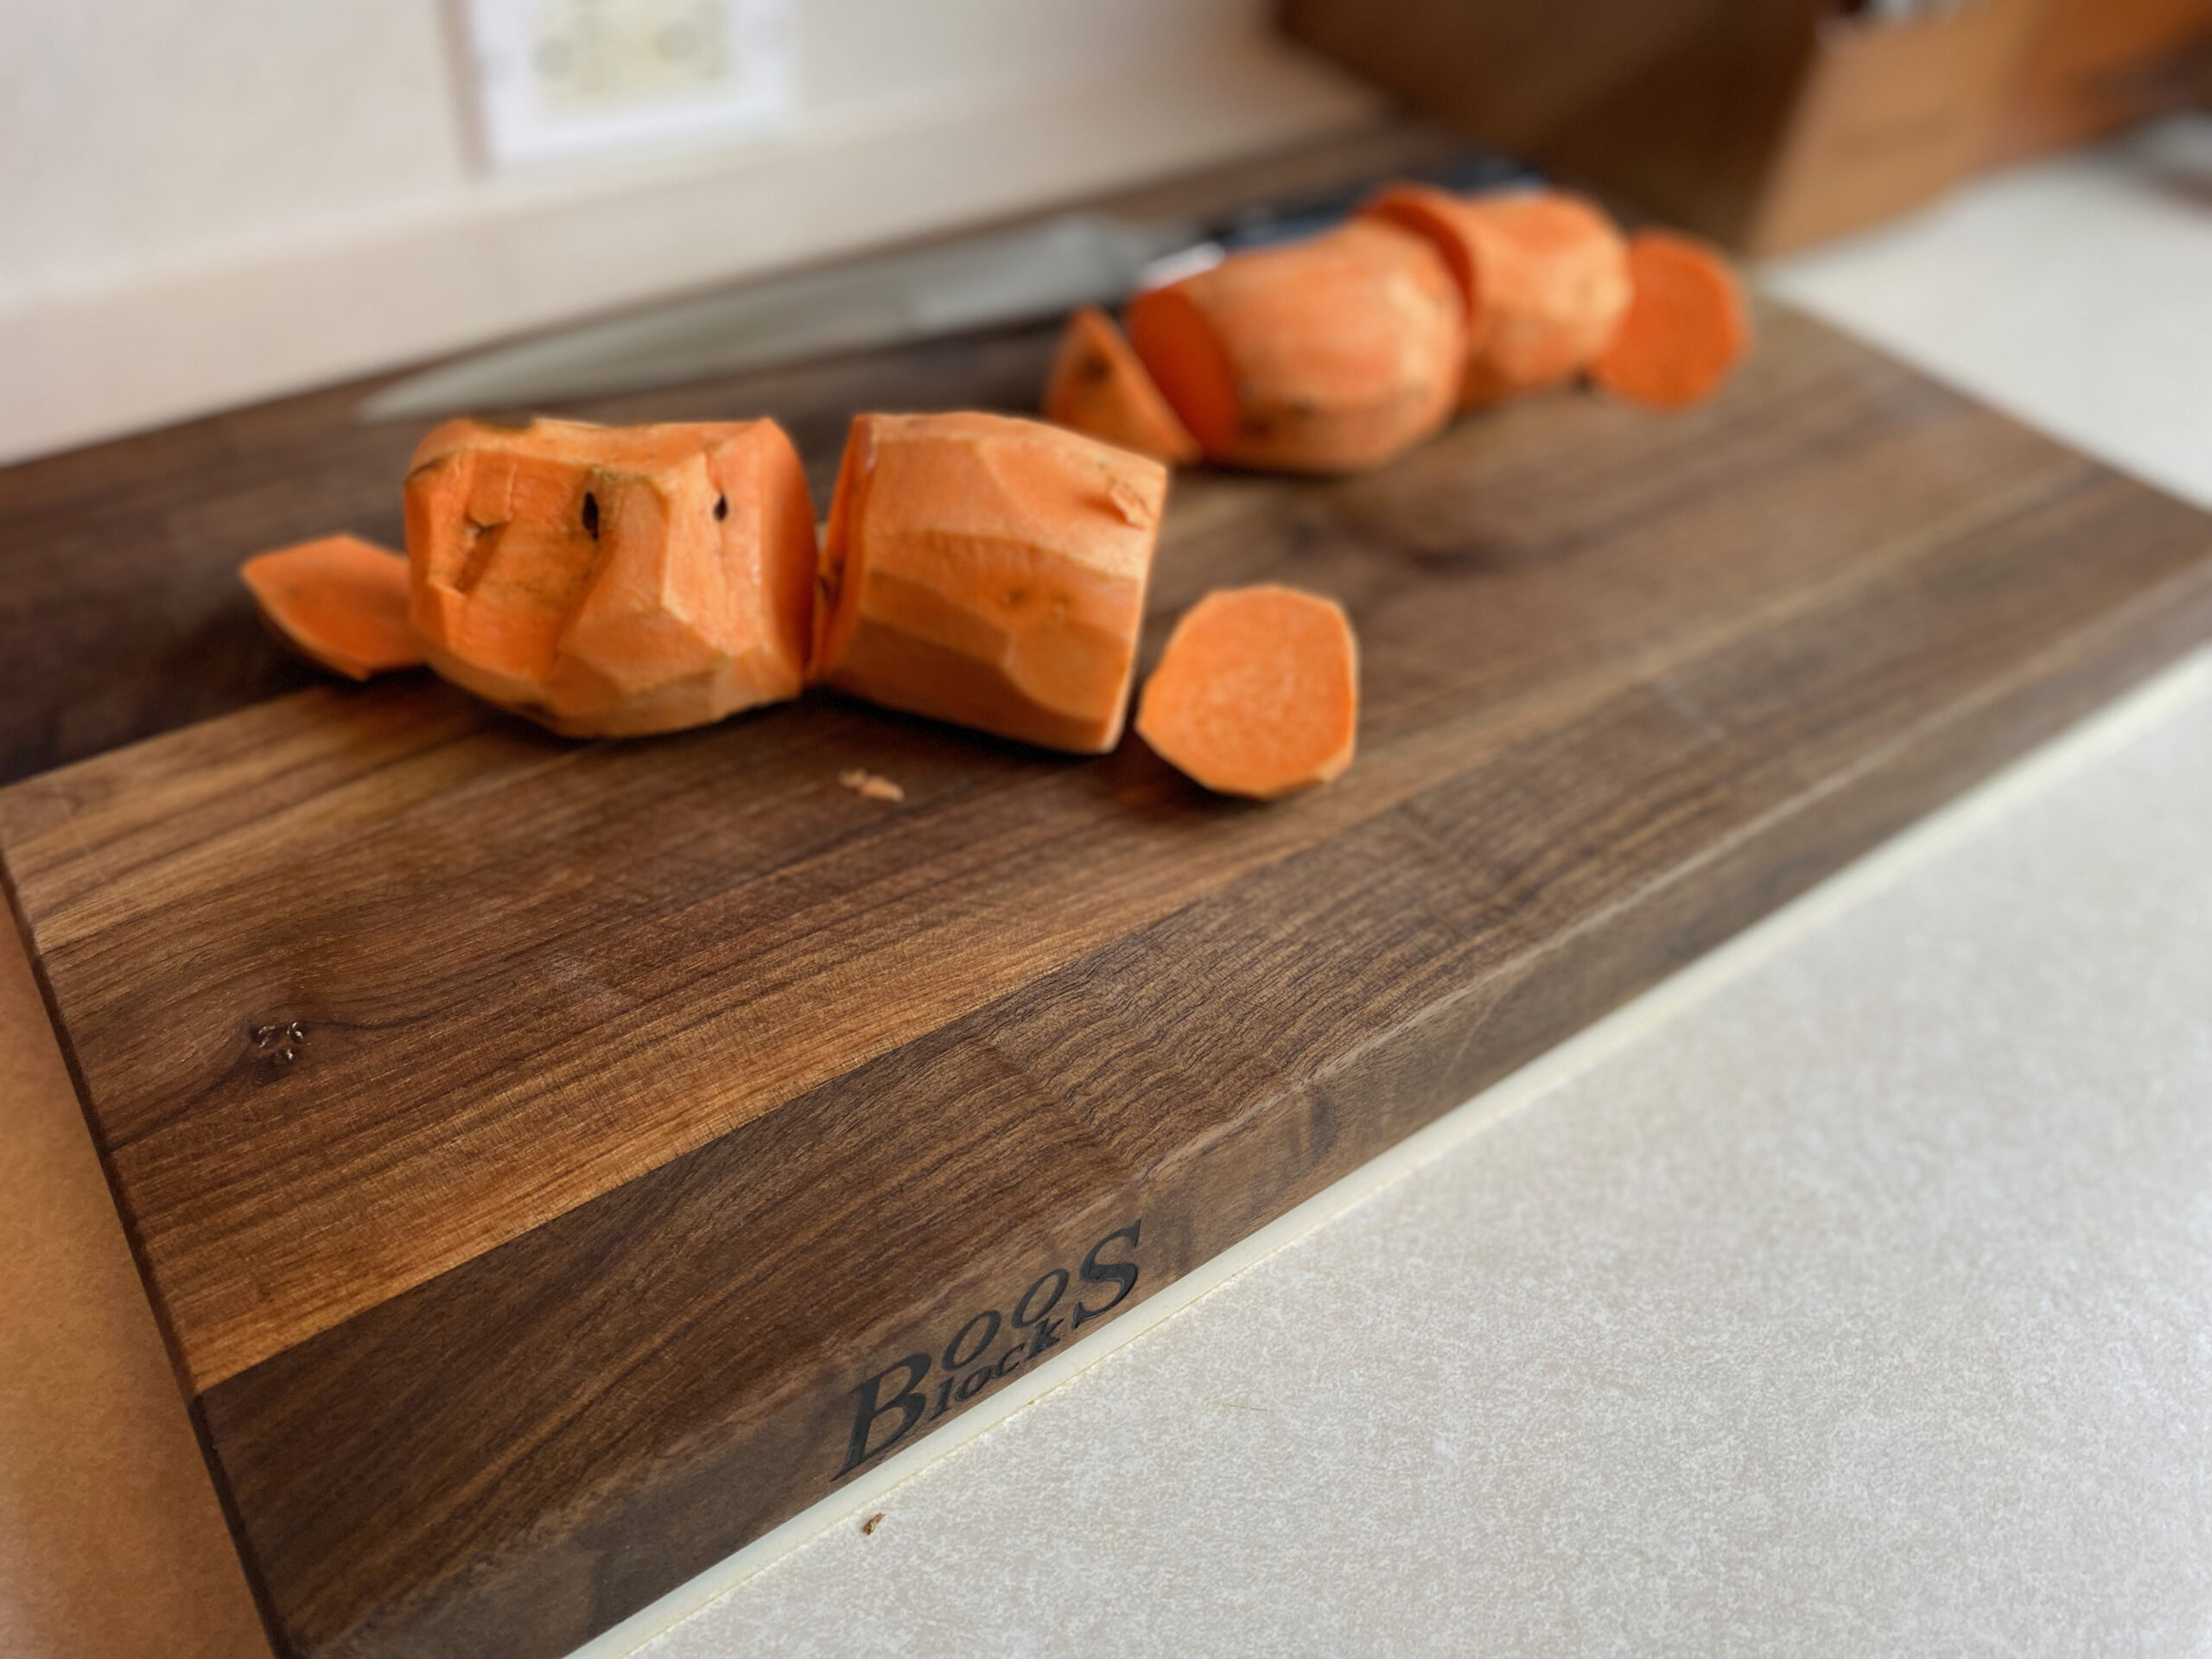 skinned sweet potatoes on a cutting board